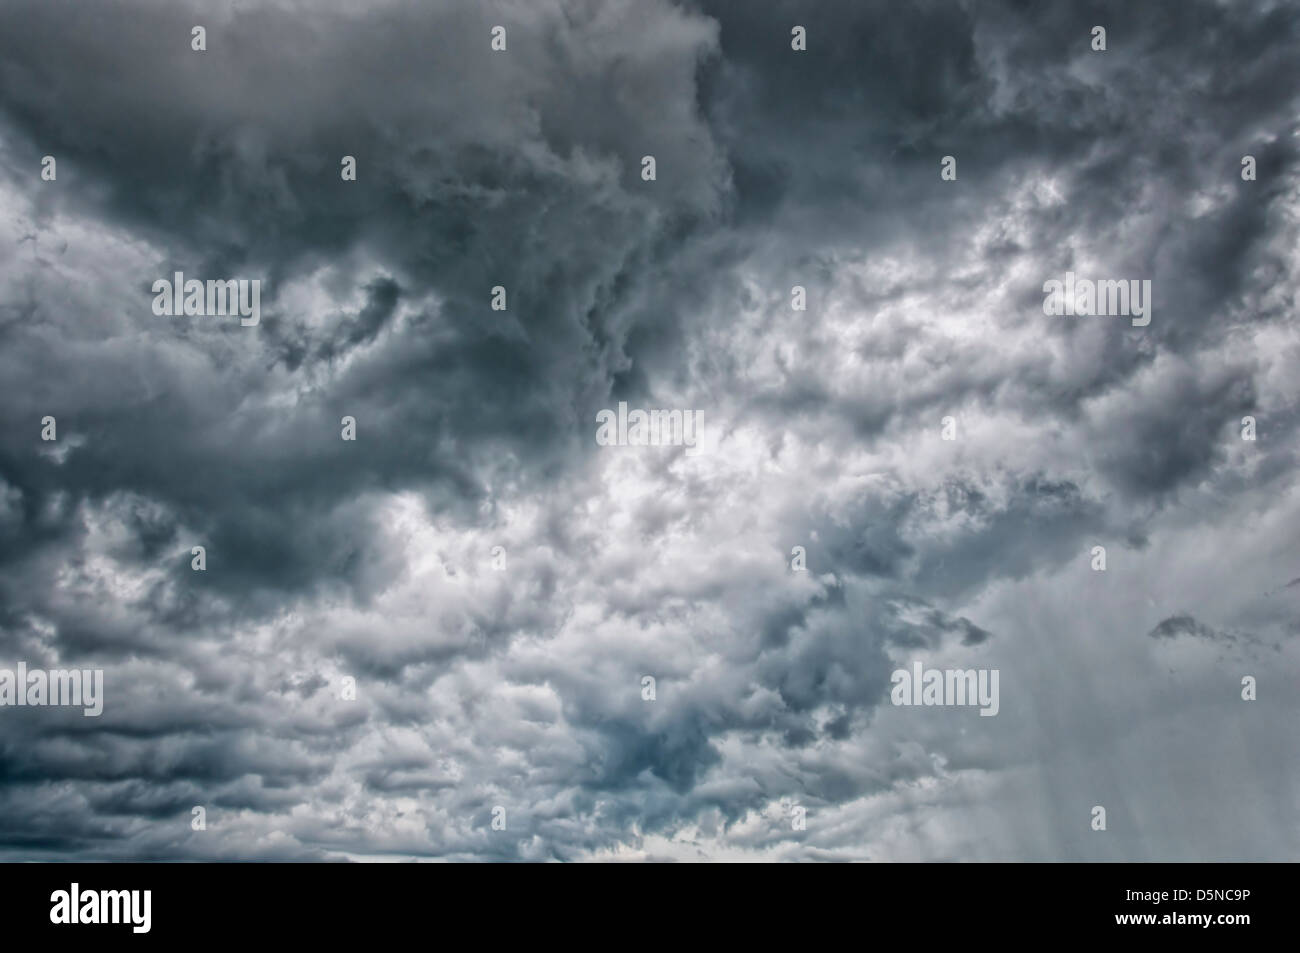 Eine dramatische stürmischen Wolkengebilde Hintergrundtextur Darstellung nähert sich schlechtes Wetter. Stockfoto